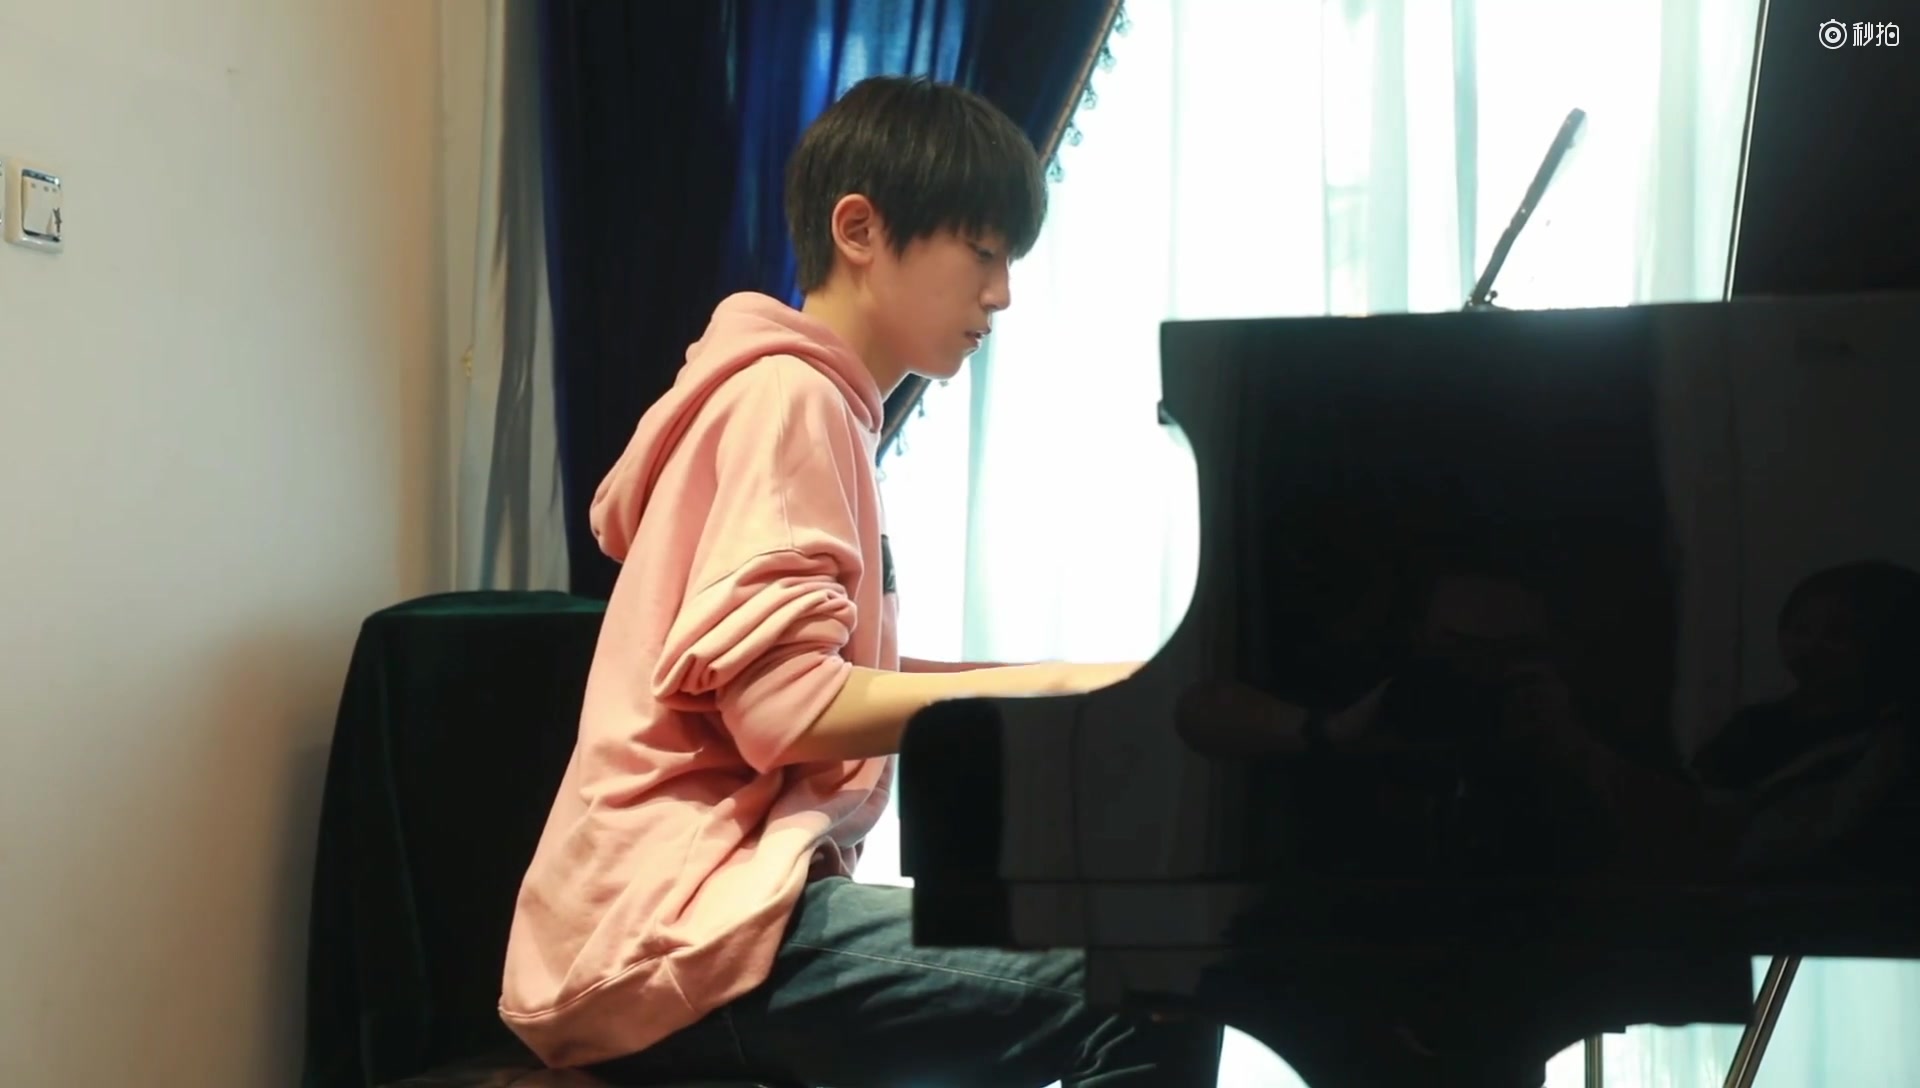 李天泽 弹钢琴图片